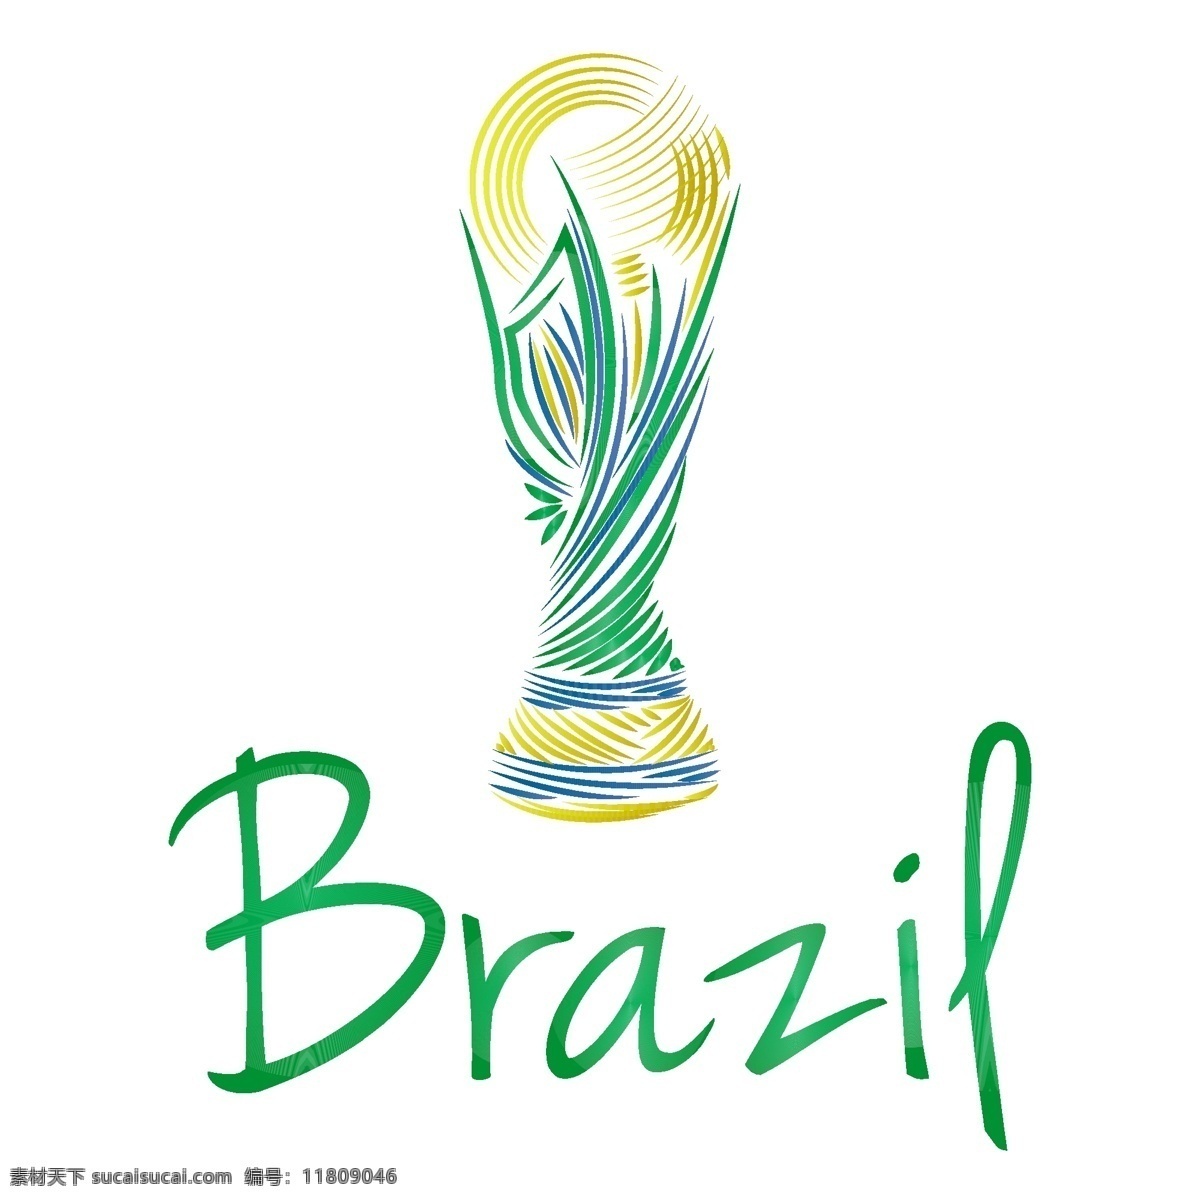 巴西 世界杯 图标 模板下载 足球 大力神杯 足球赛事 足球比赛 体育运动 生活百科 矢量素材 白色